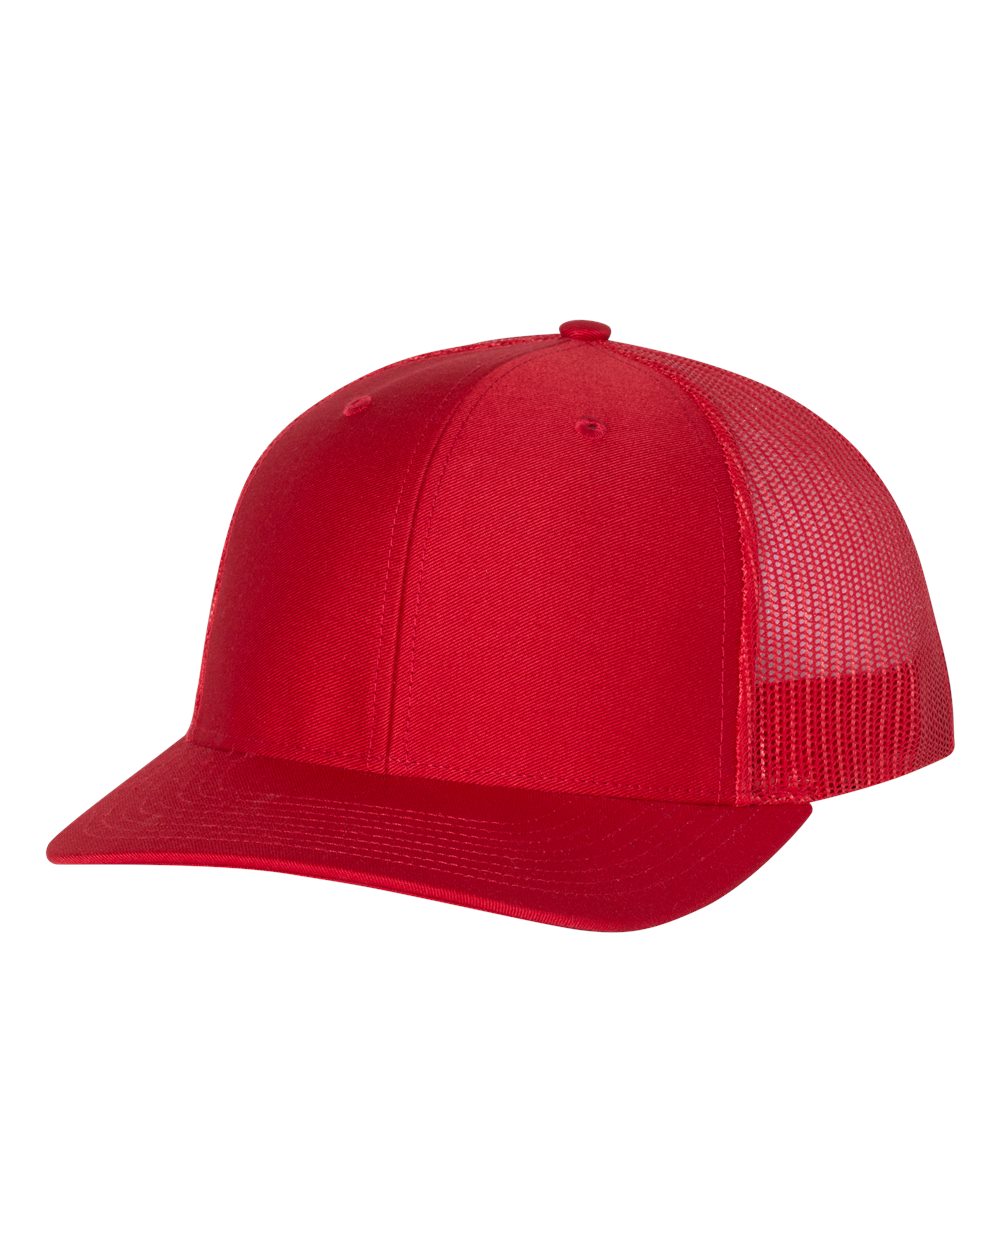 richardson cap red